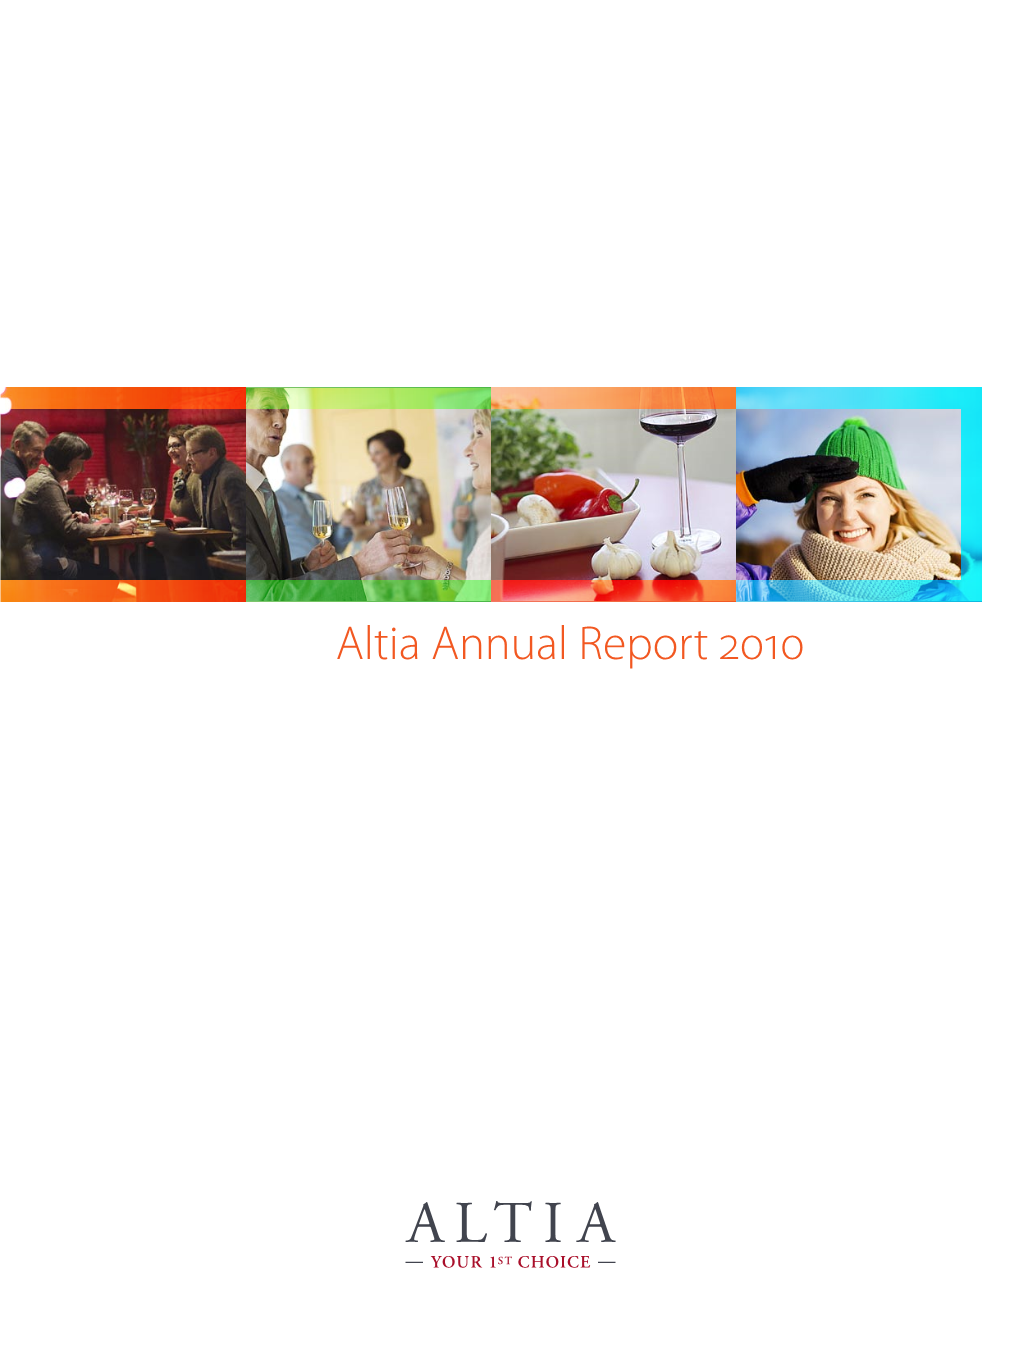 Altia Annual Report 2010